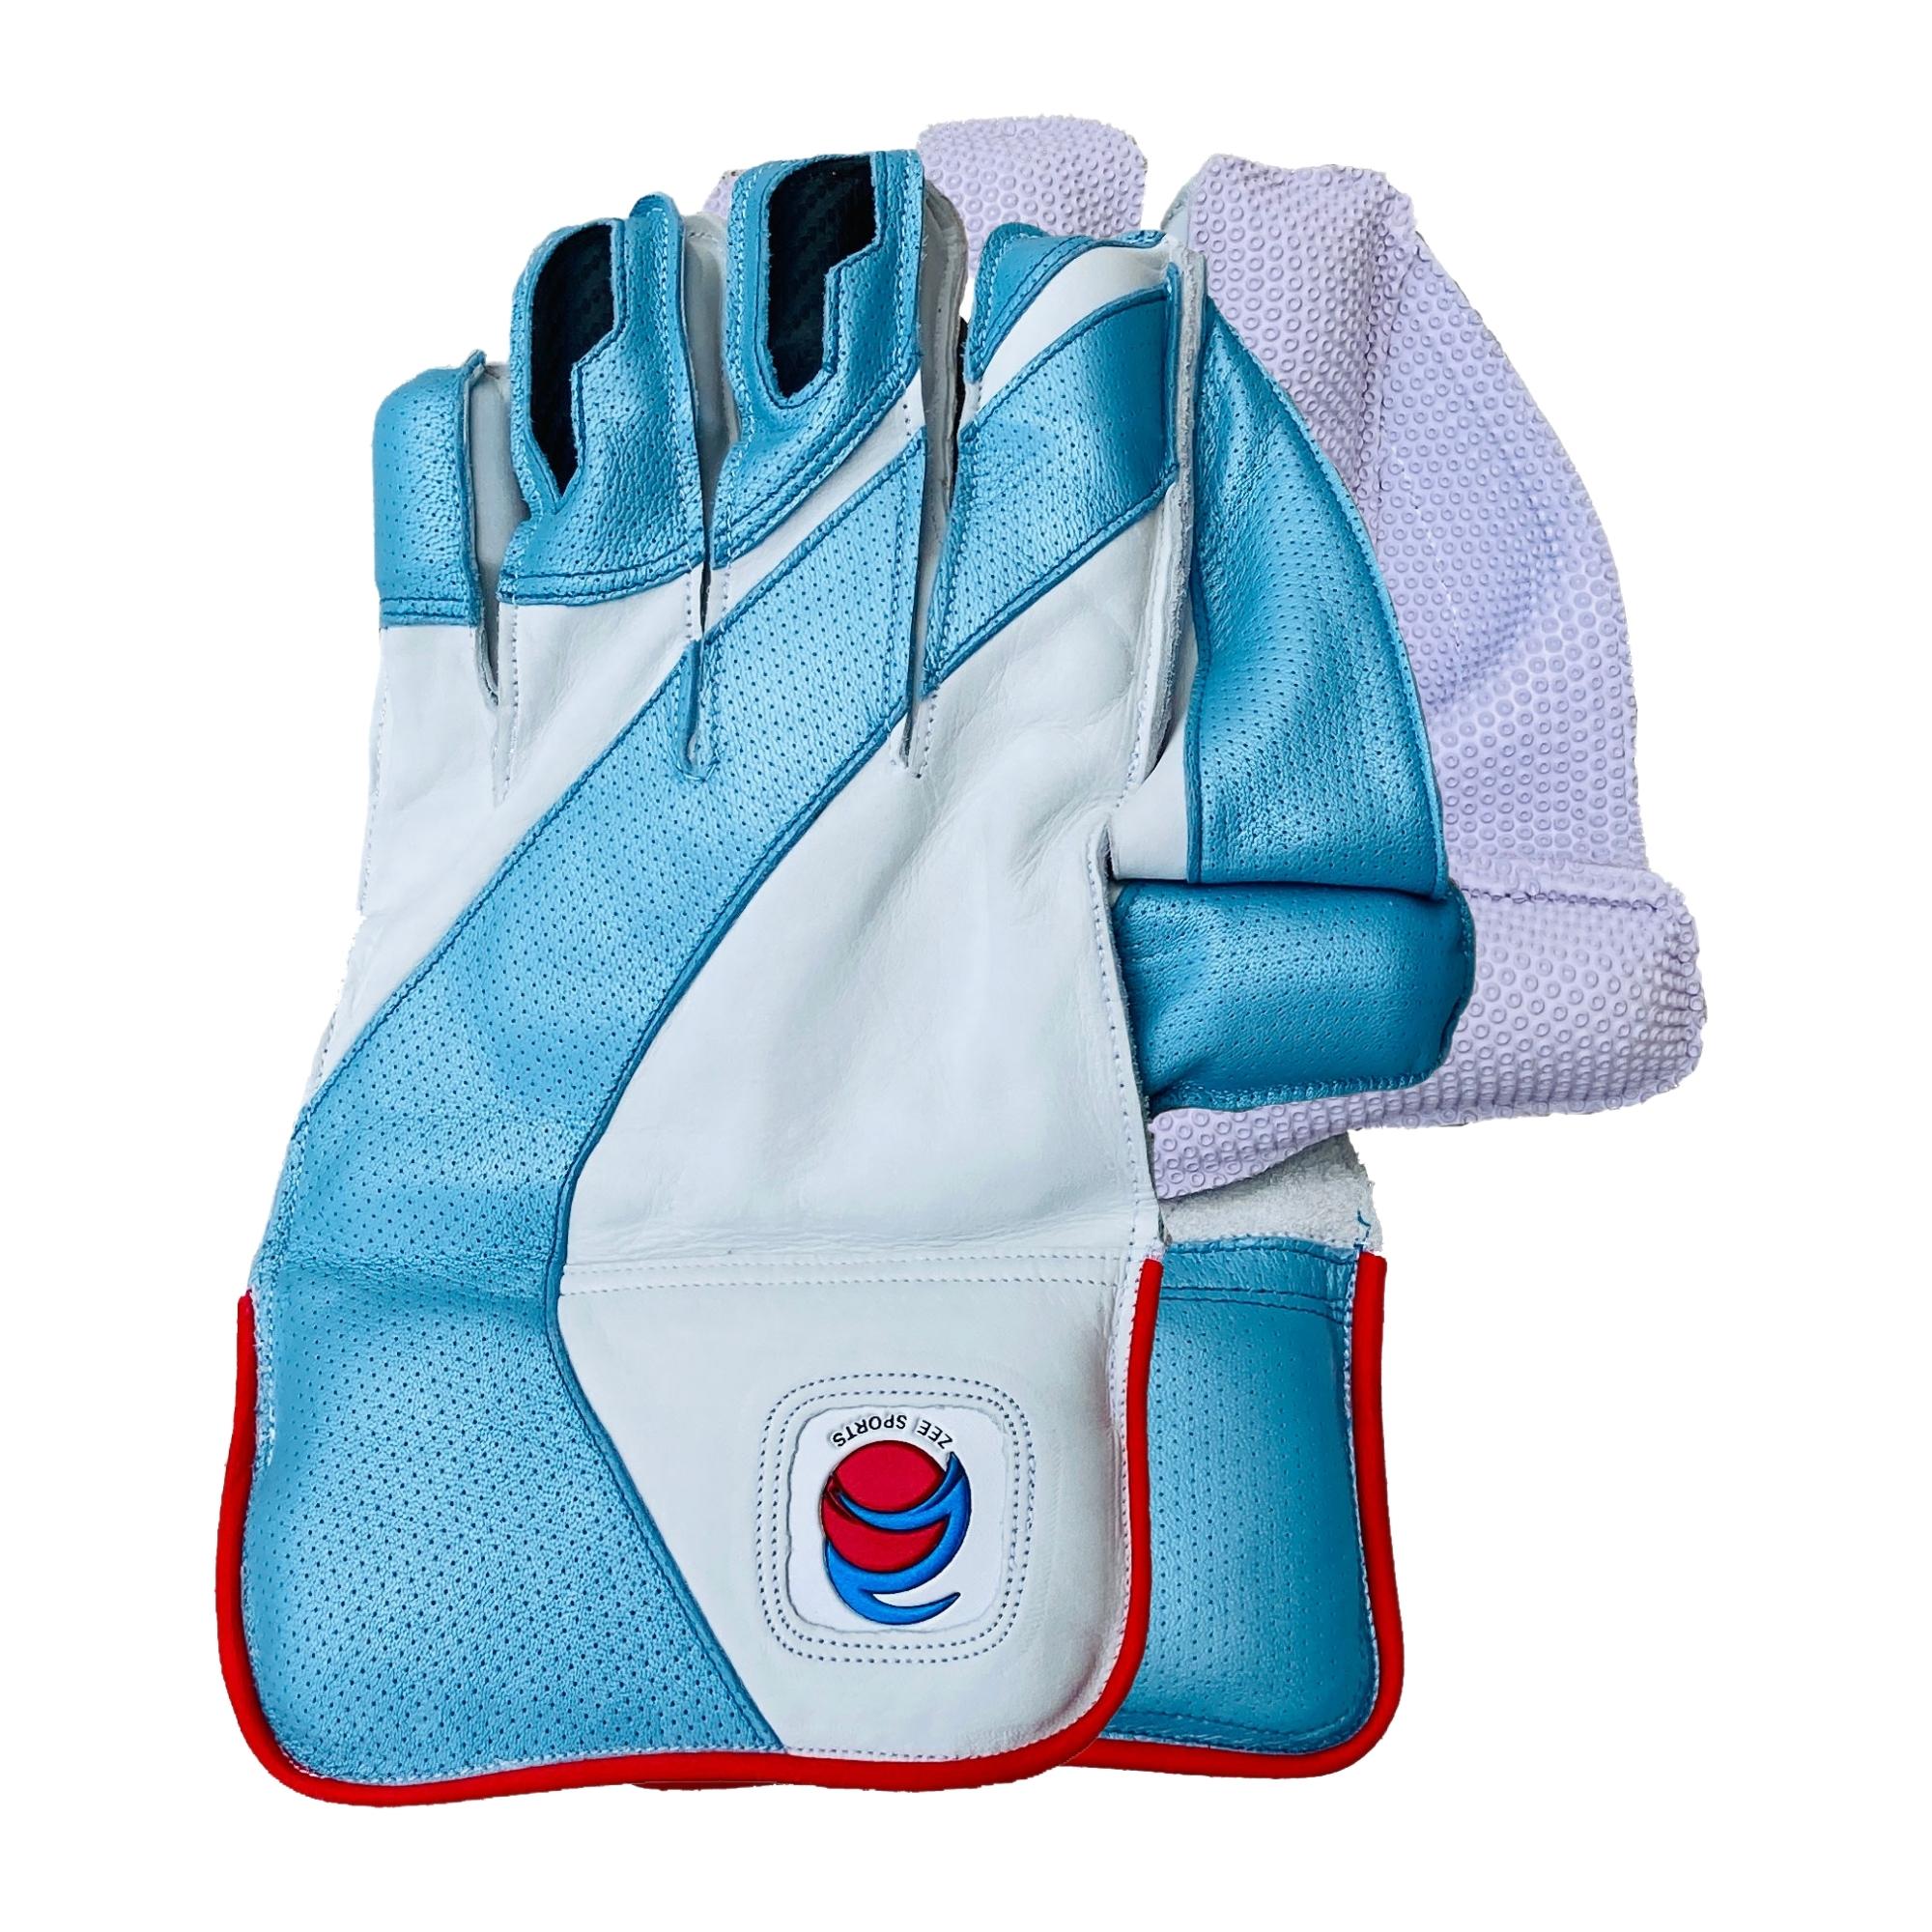 ZEE Sports Wicket Keeping Gloves Reserve